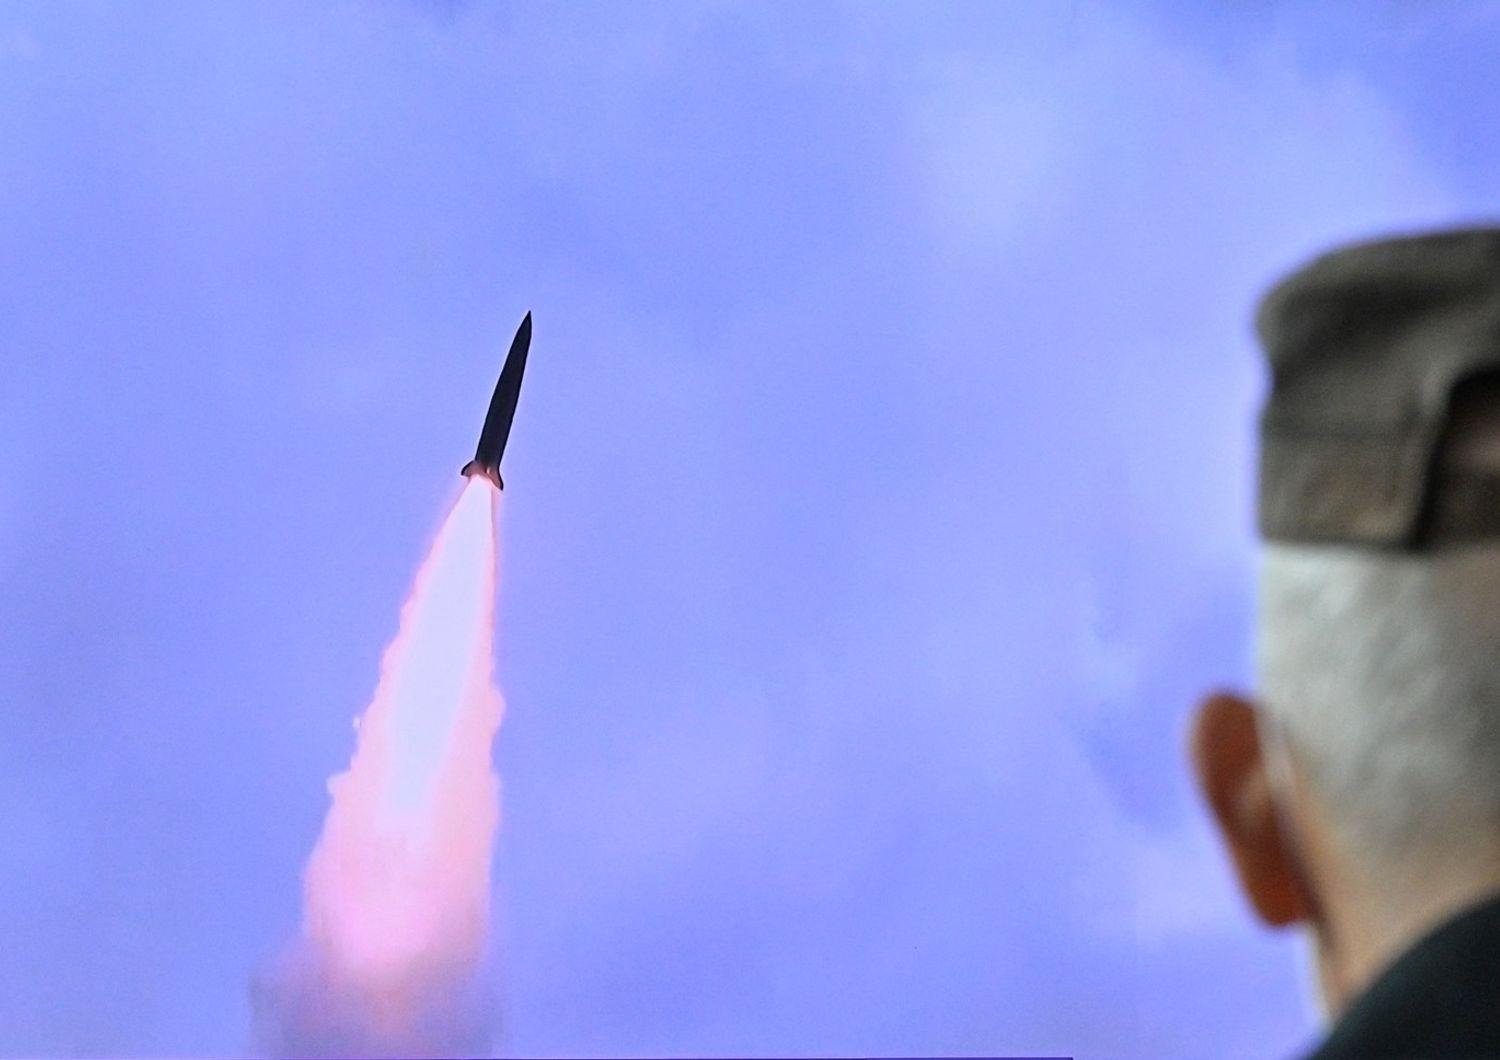 Il lancio di un missile nordcoreano